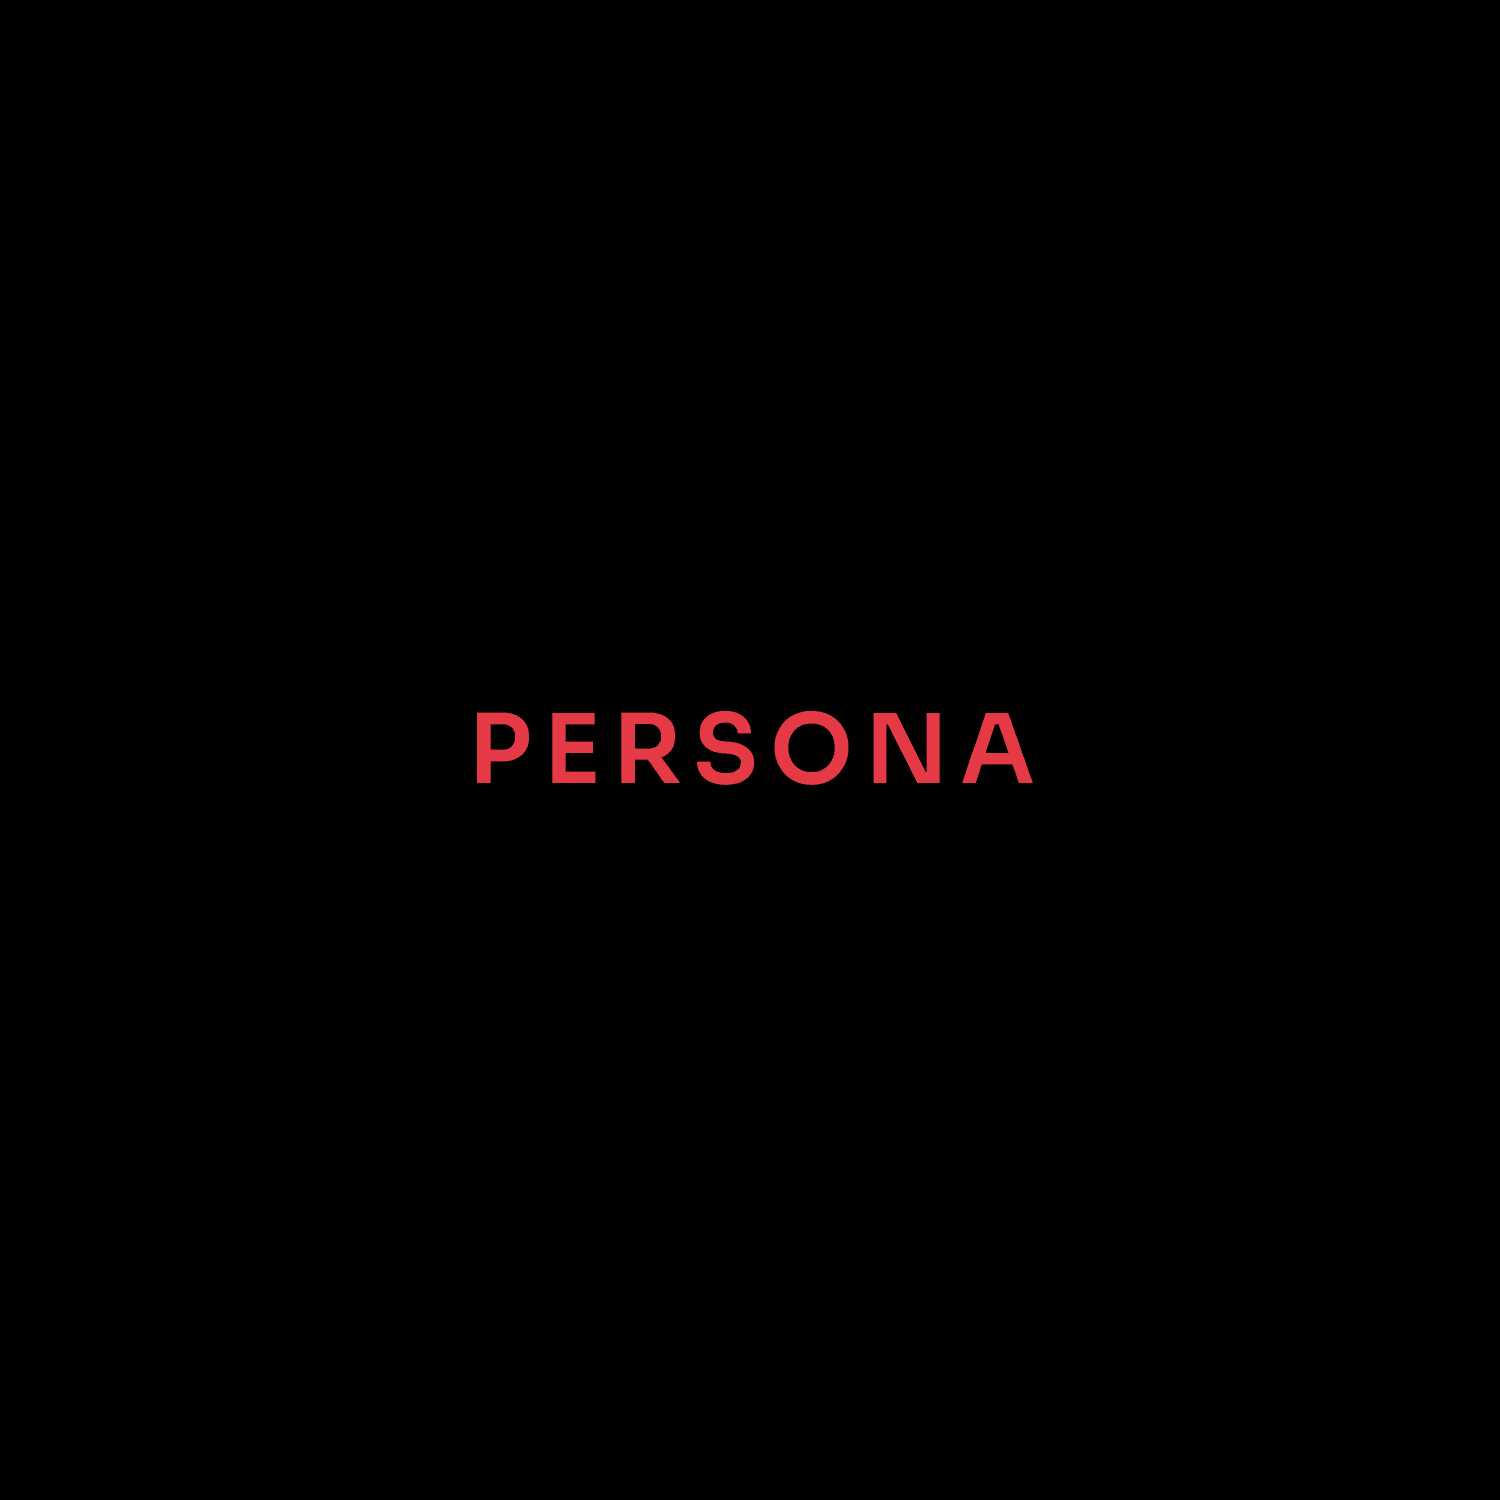 Persona3 橫幅